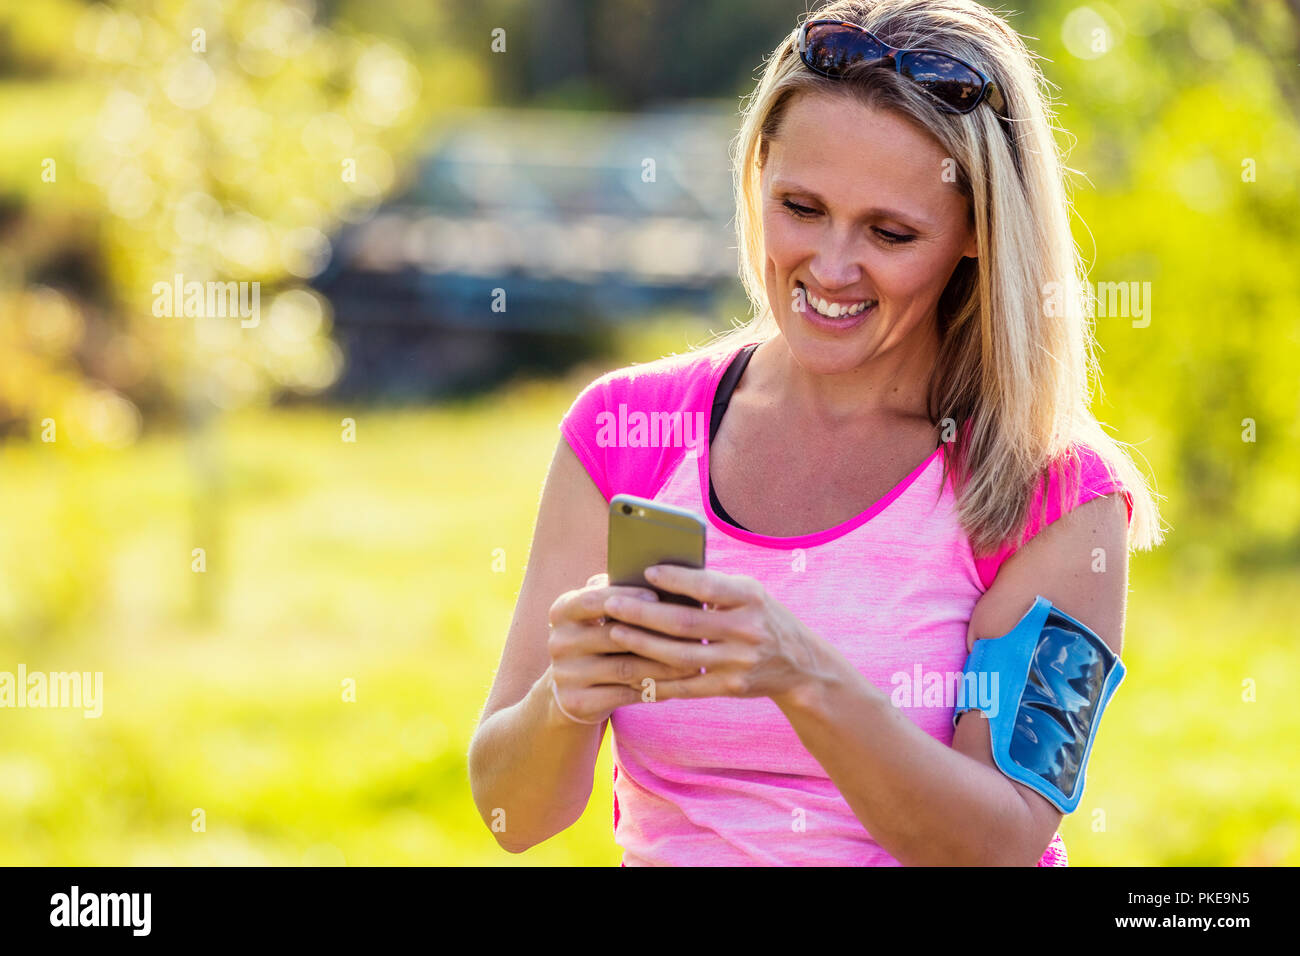 Eine reife Frau tragen aktiv tragen und ein Arm band ihr smart phone Texte, bevor Sie sich für einen Lauf in einem Stadtpark im Herbst Saison zu halten Stockfoto